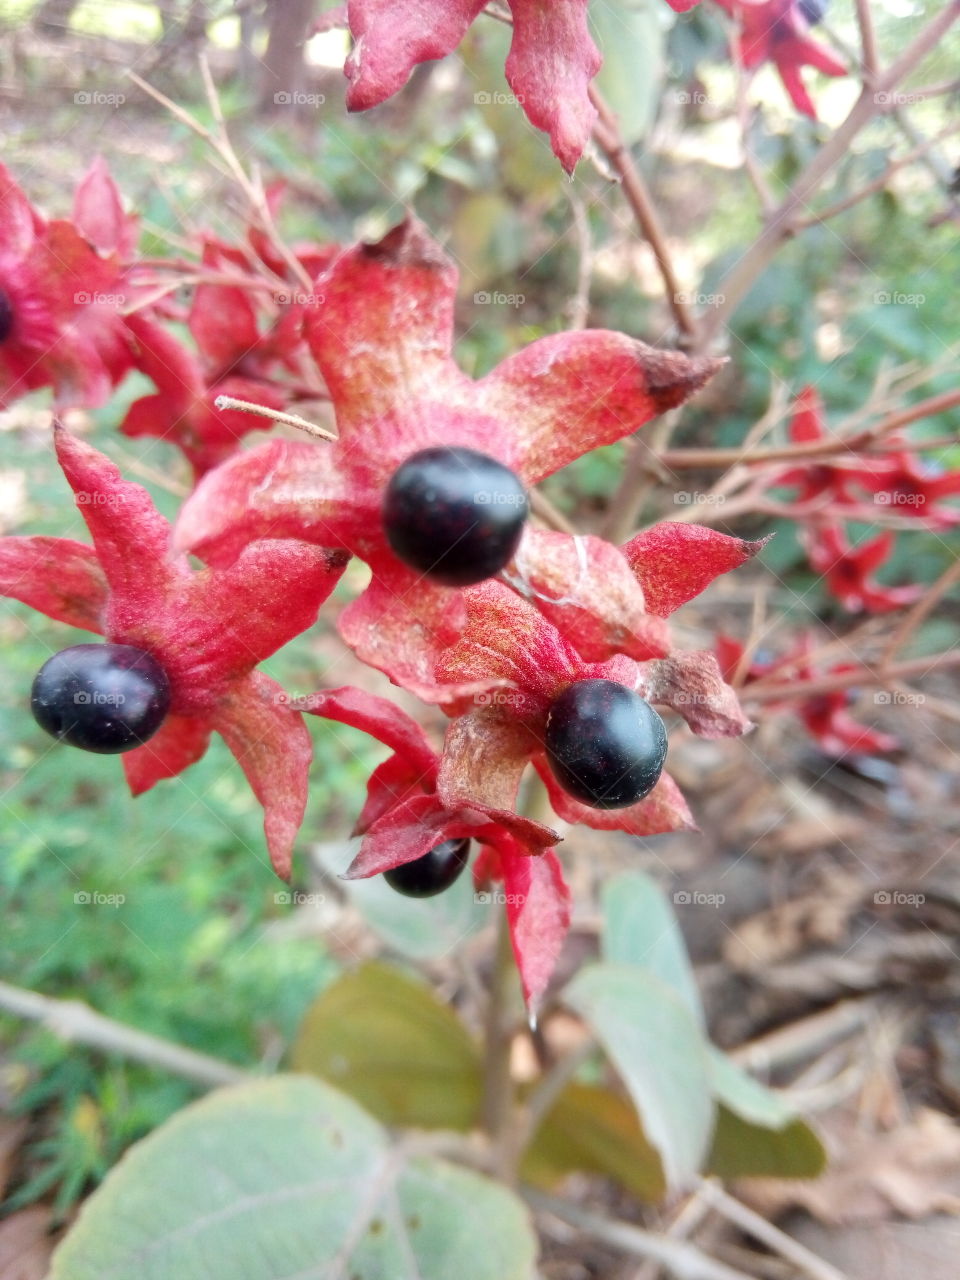 black fruit (lucky)